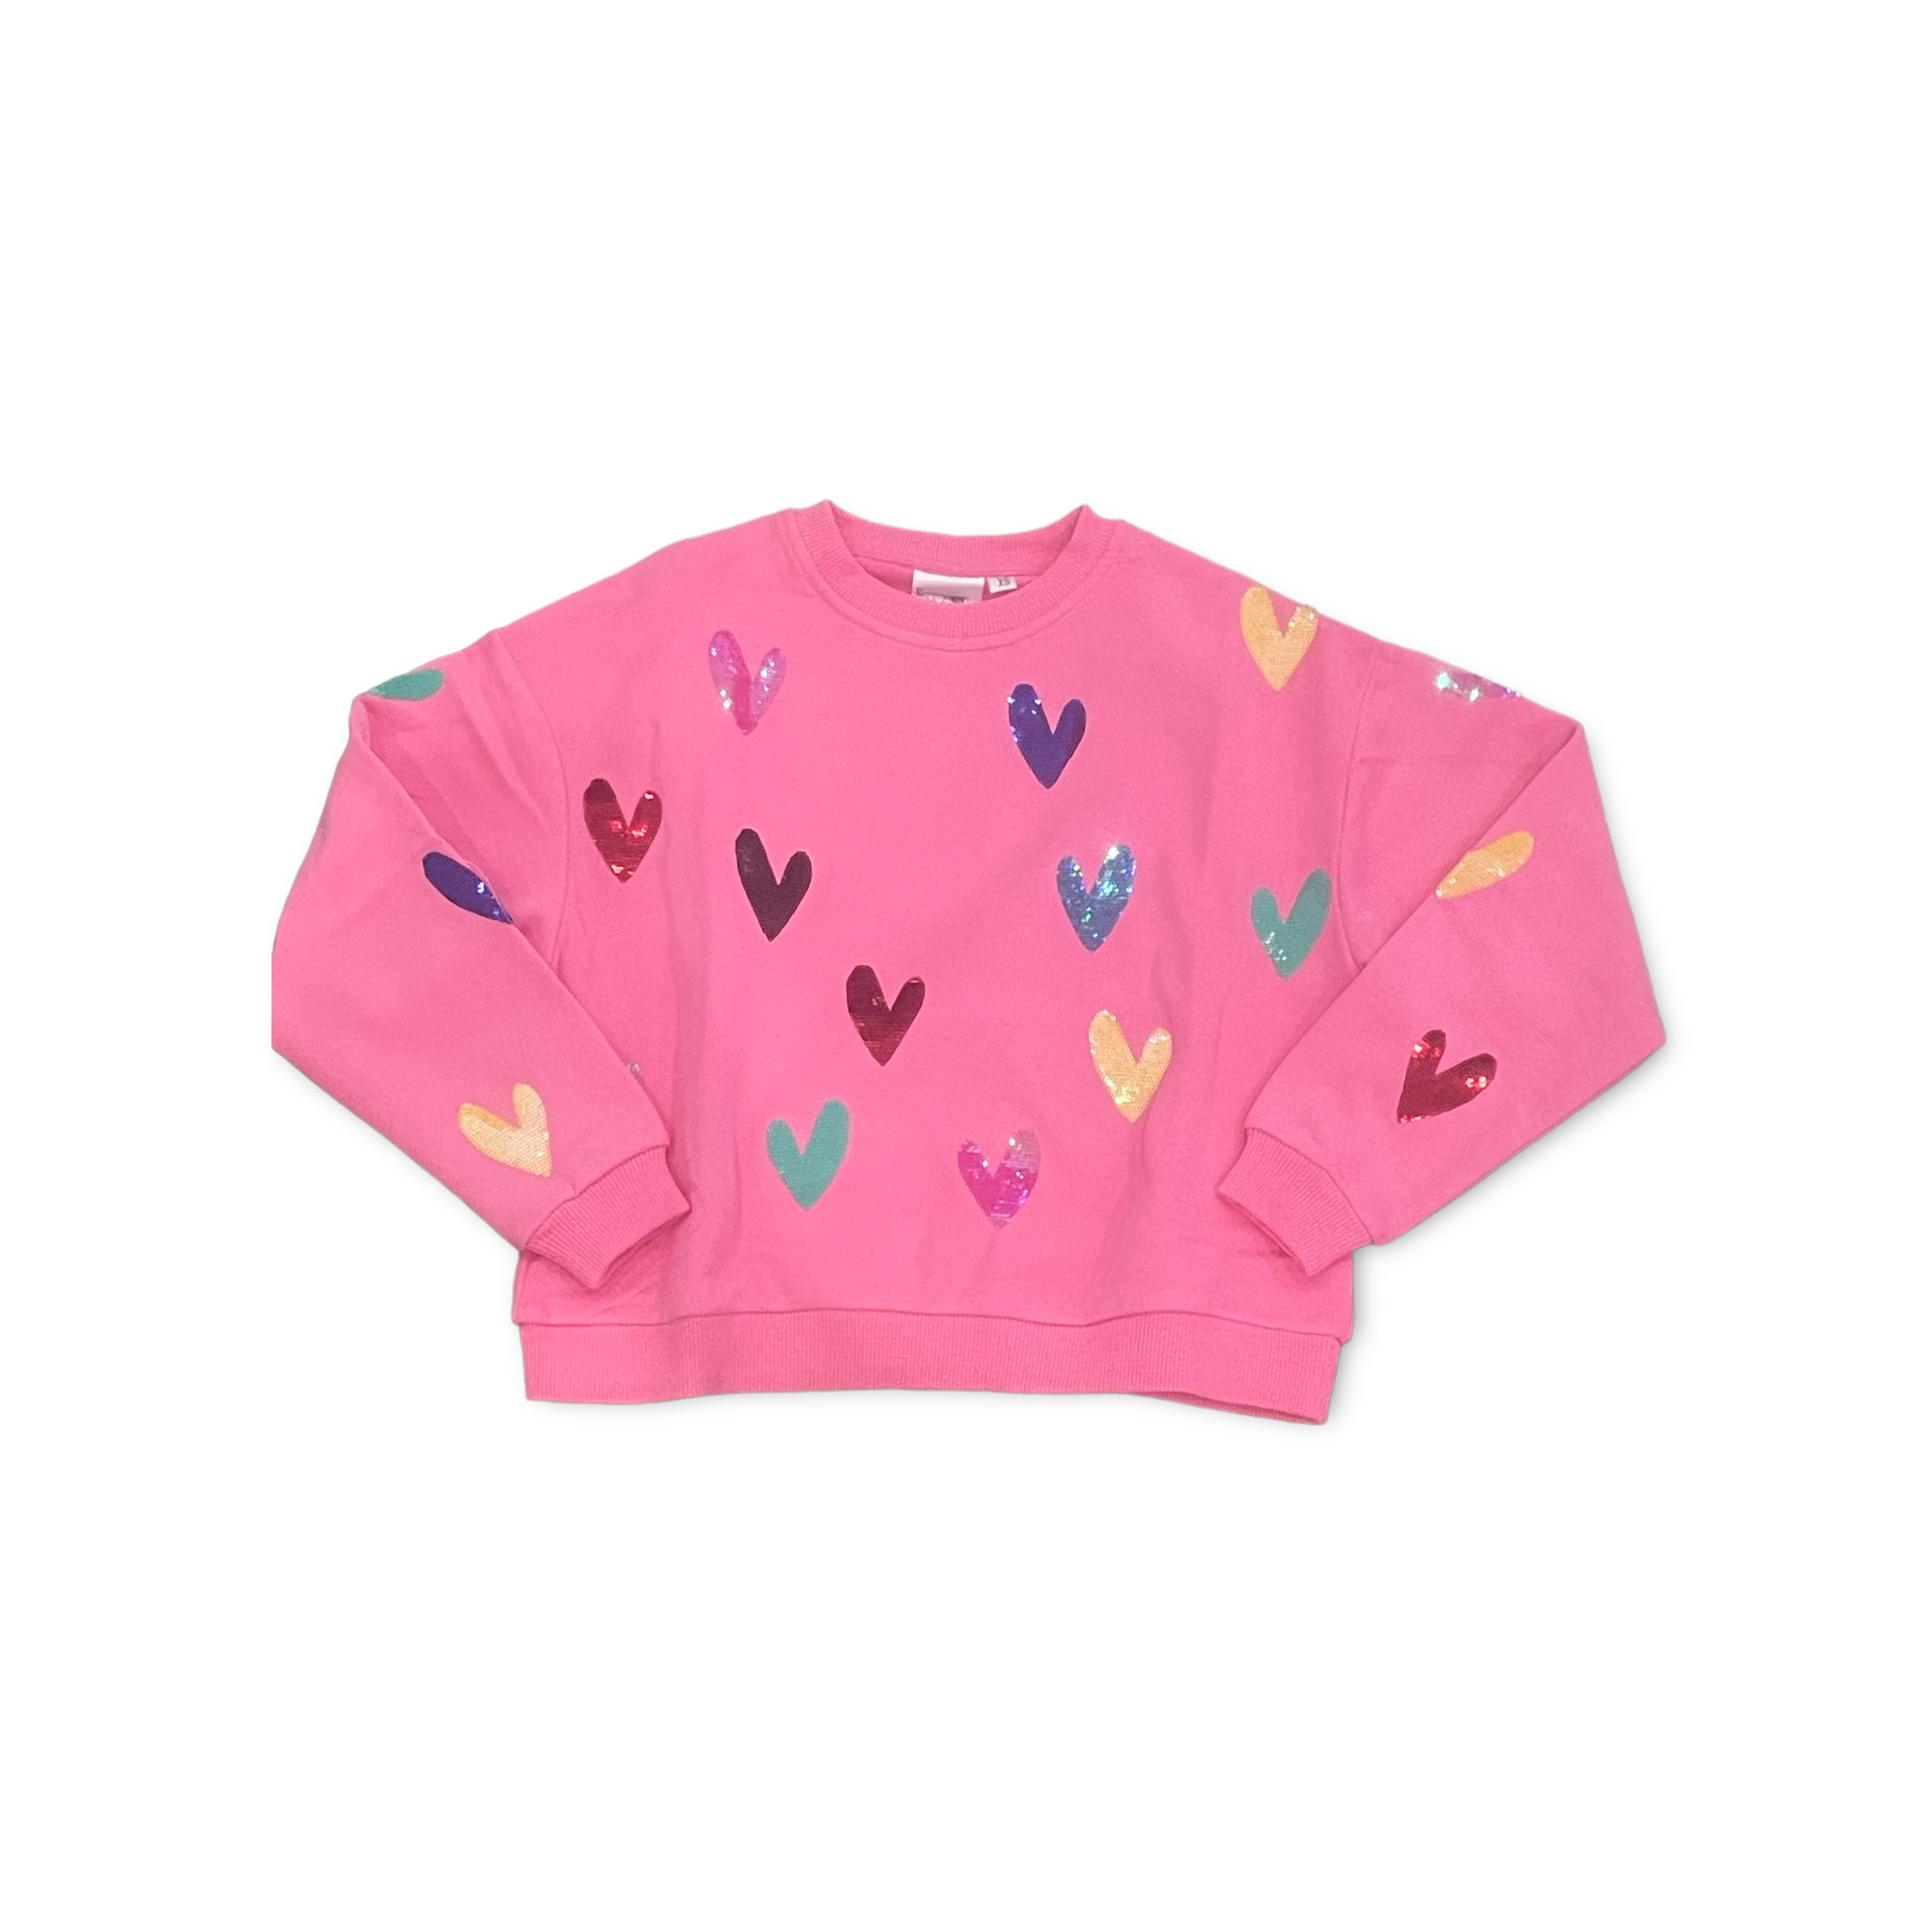 Queen of Sparkles Heart This Sweatshirt